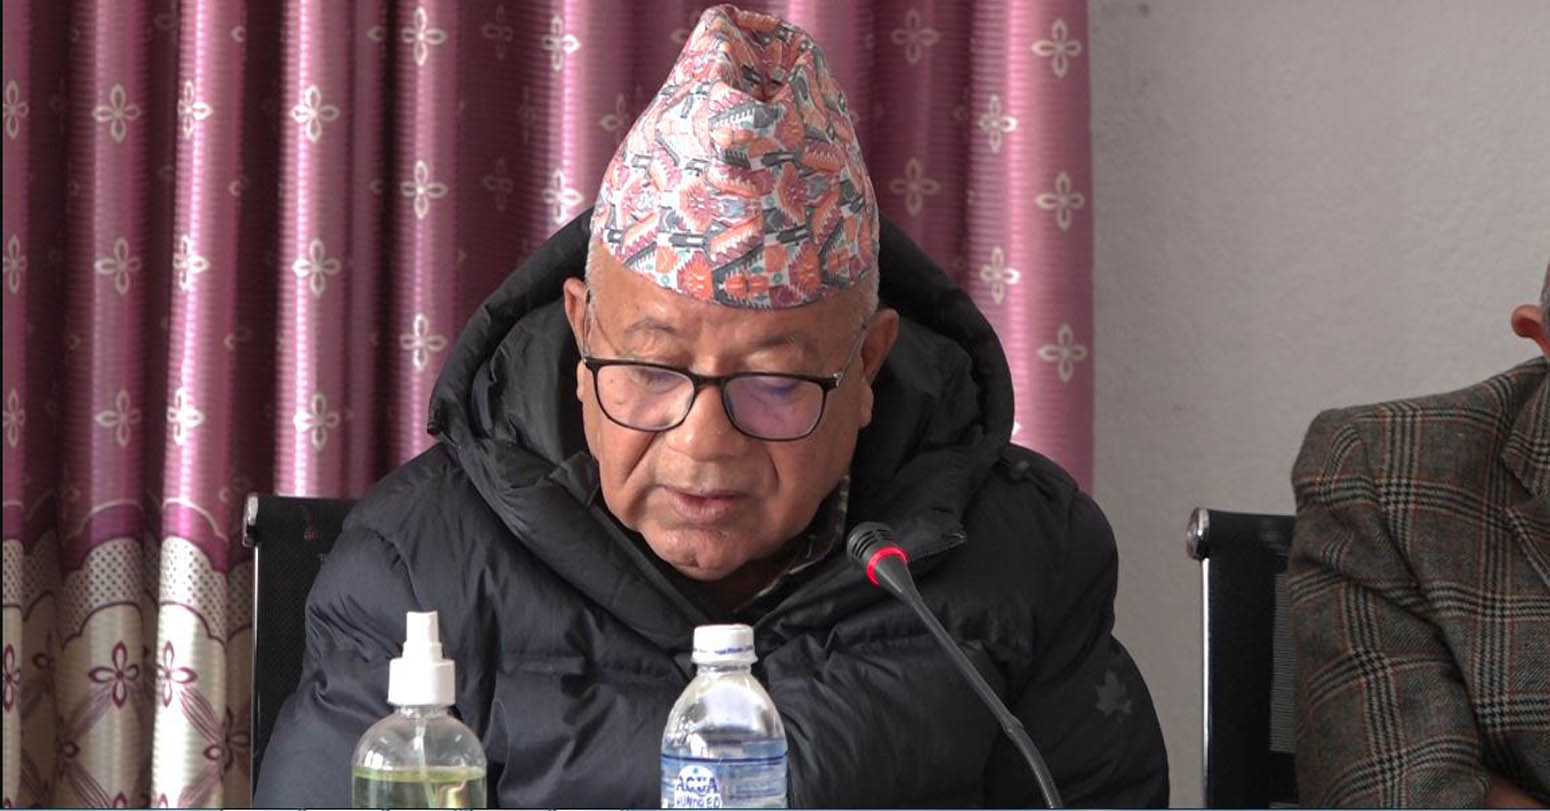 निजगढ अन्तर्राष्ट्रिय विमानस्थलको काम अघि नबढाएकोप्रति प्रधानमन्त्रीसँग माधव नेपाल रुष्ट